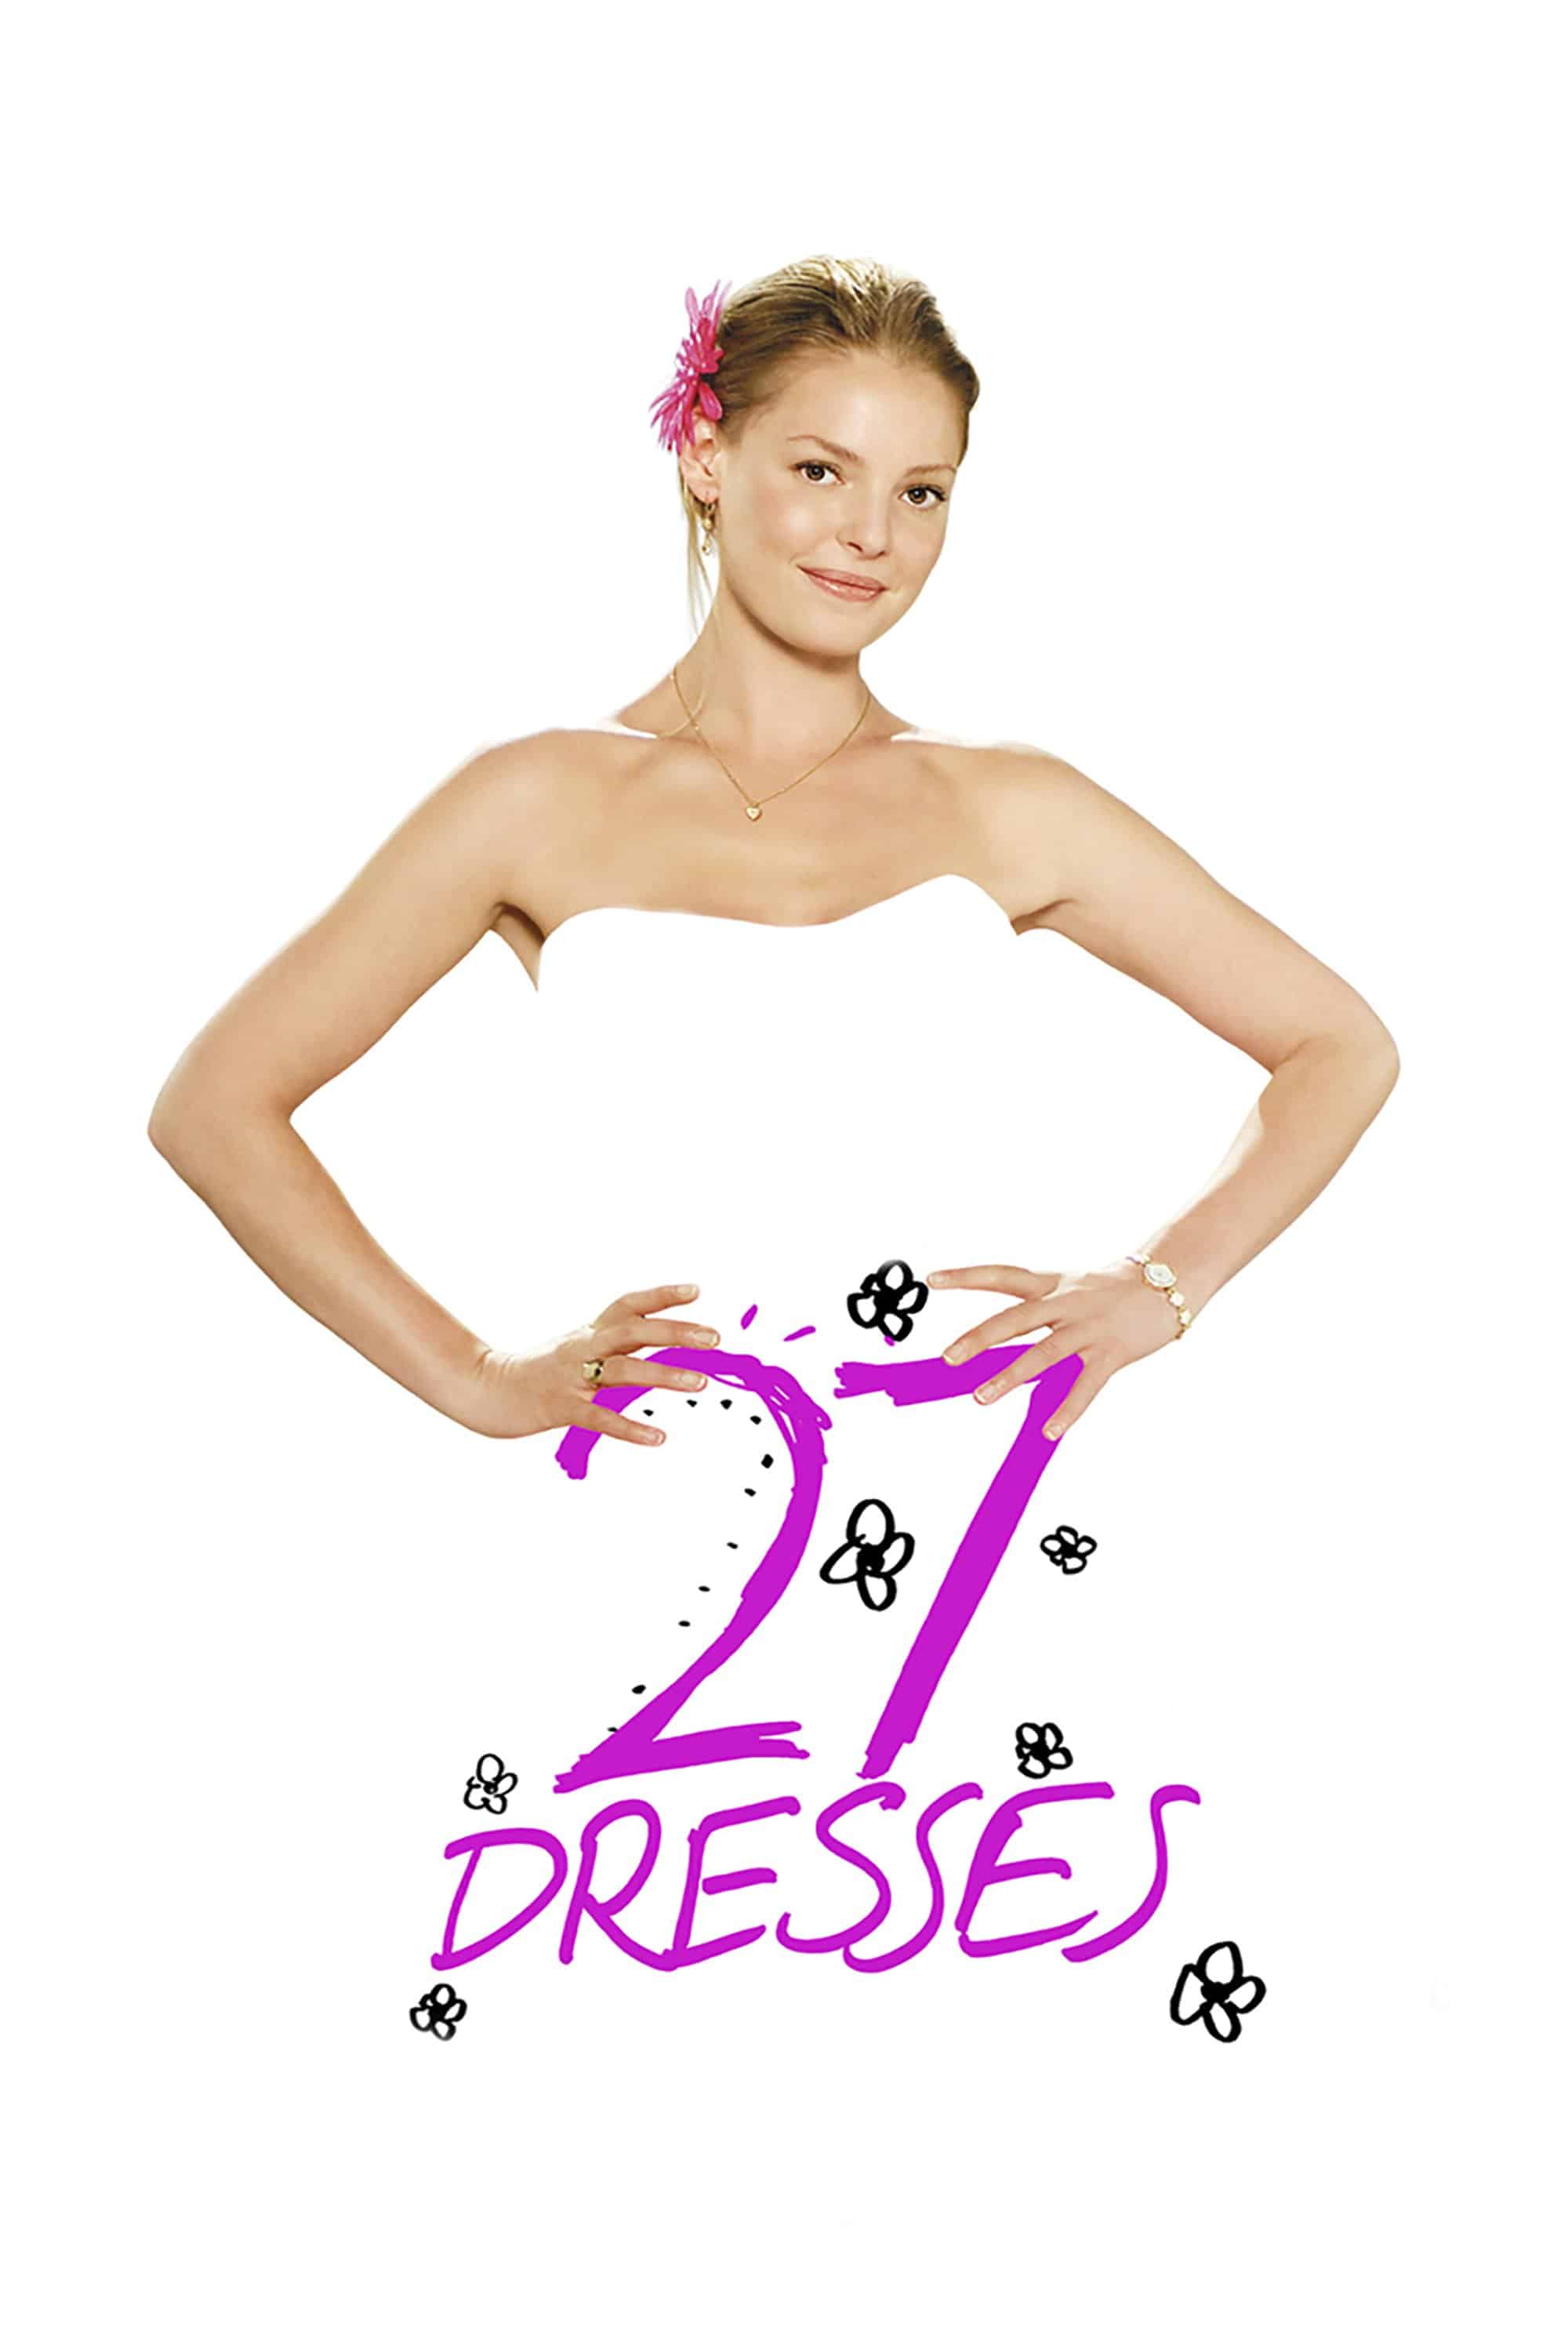 27 Dresses, 2008 